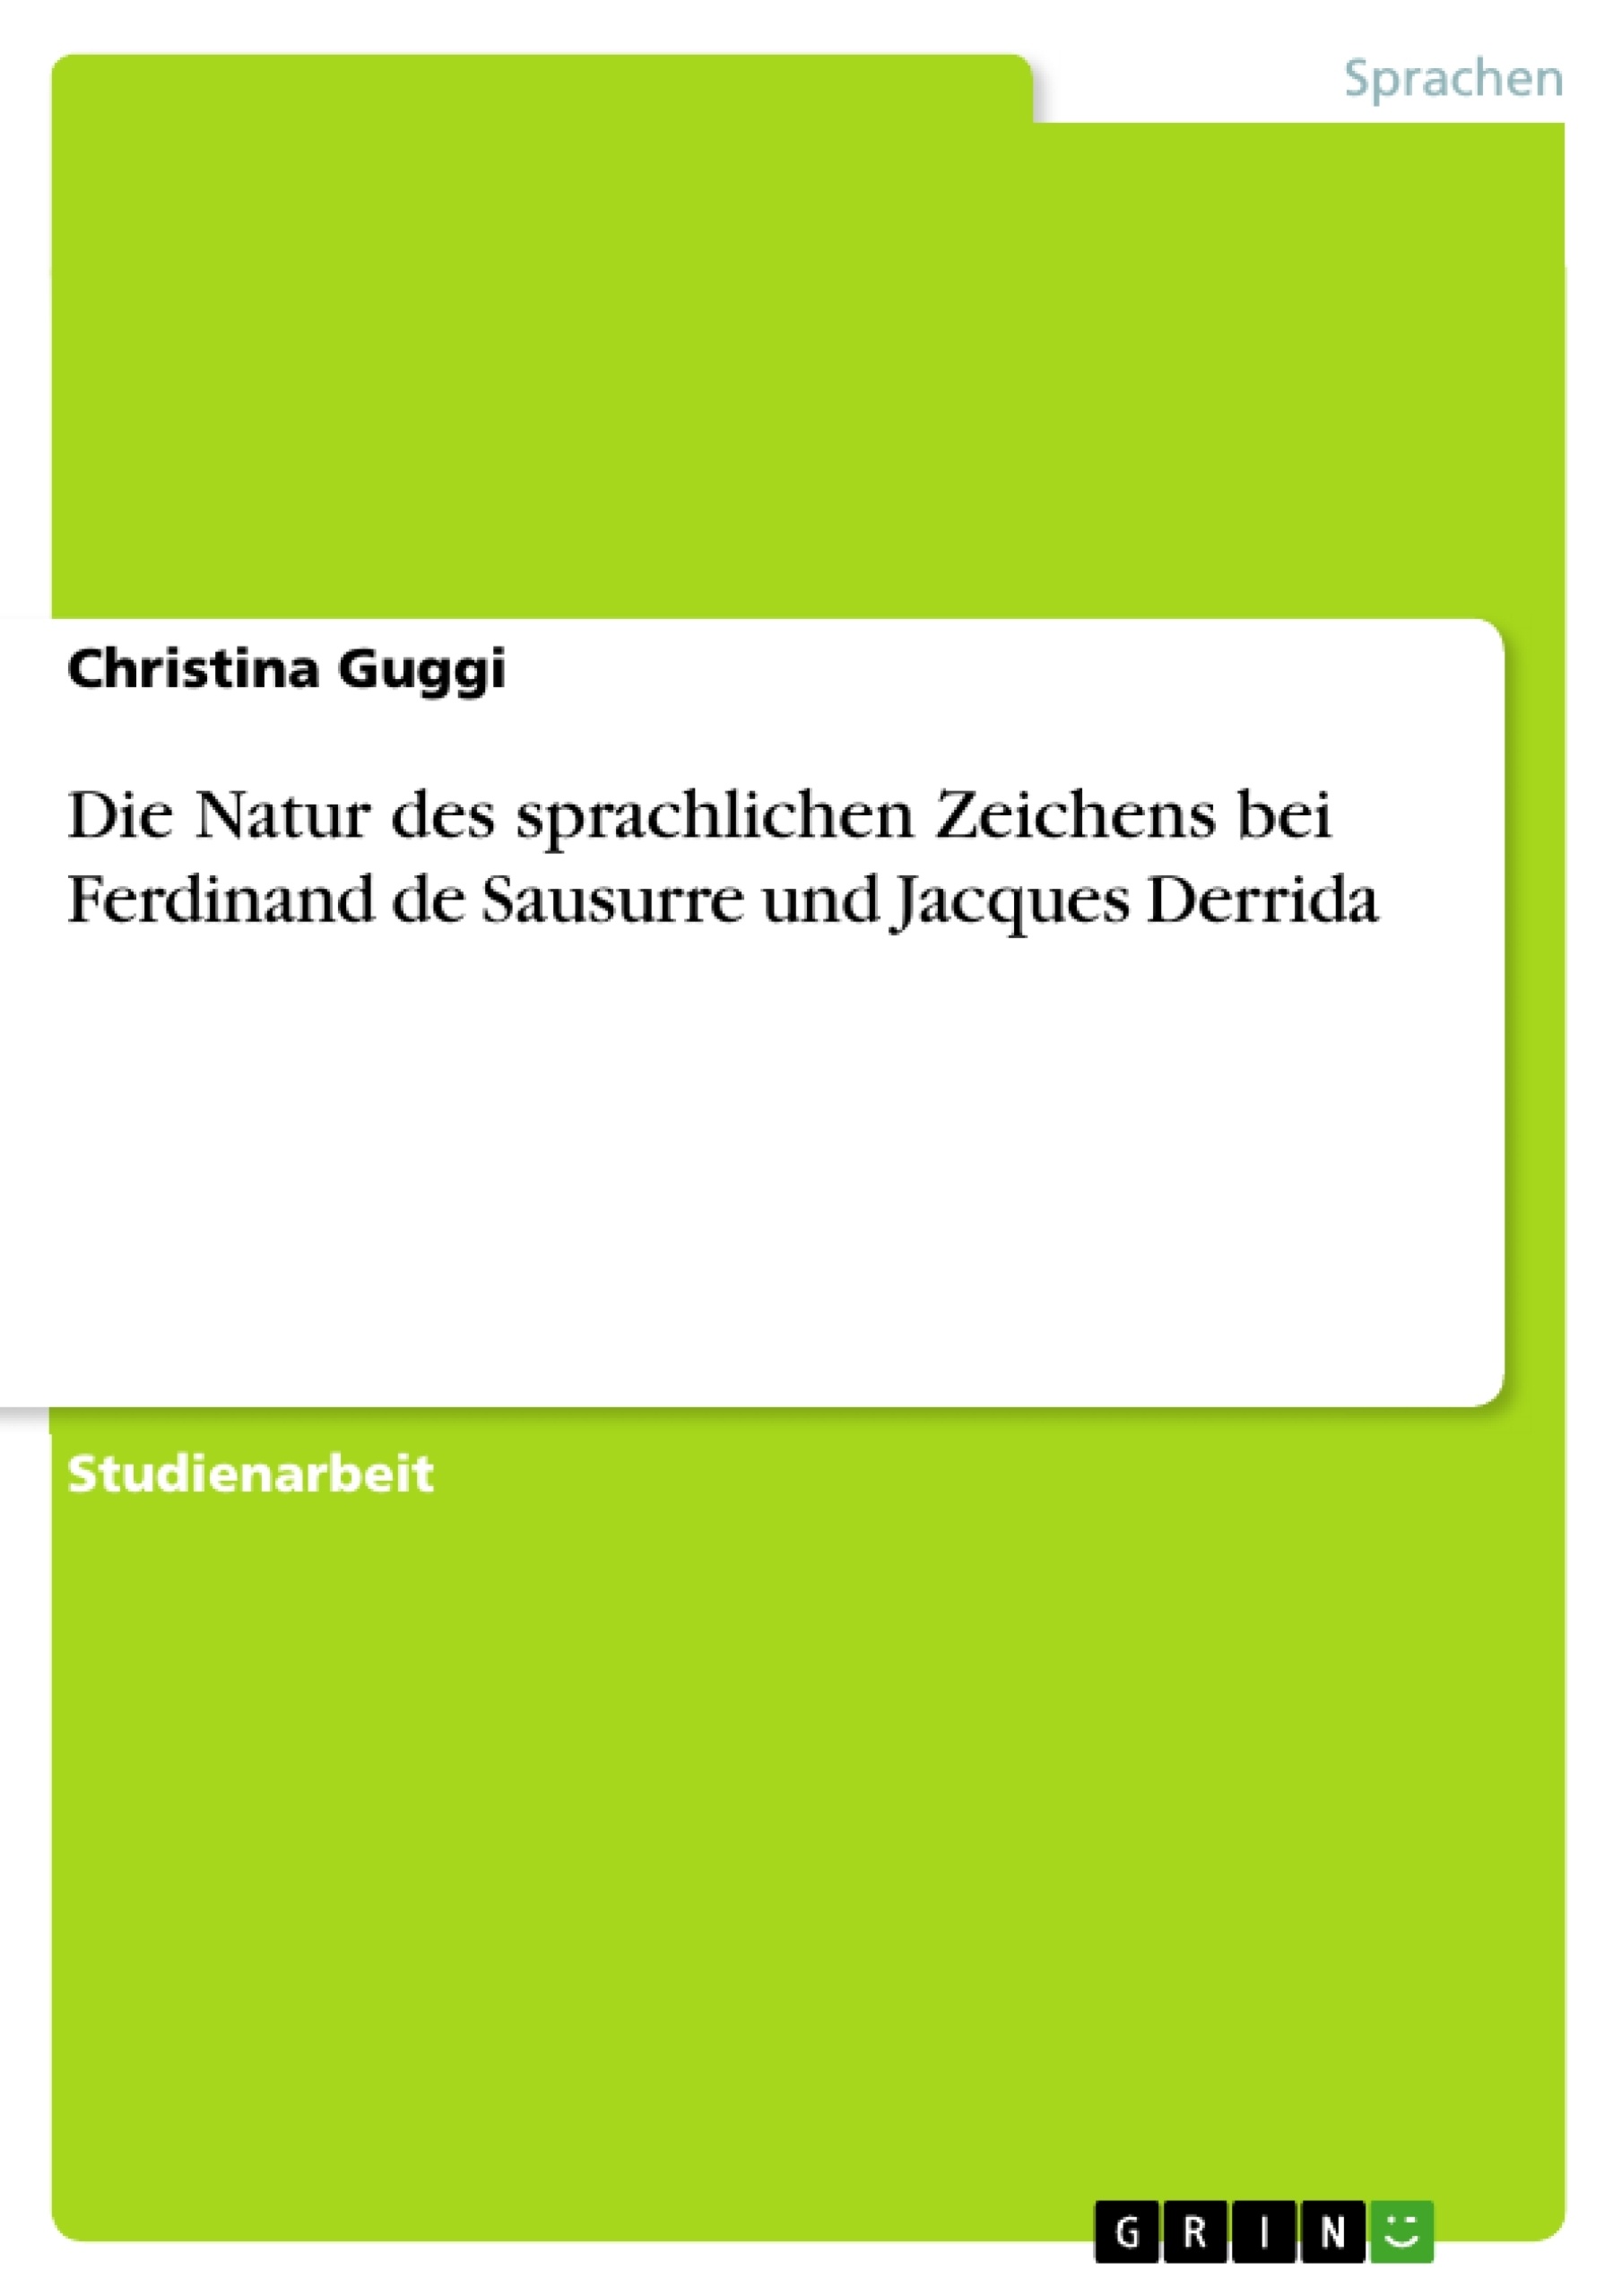 Titre: Die Natur des sprachlichen Zeichens bei Ferdinand de Sausurre und Jacques Derrida